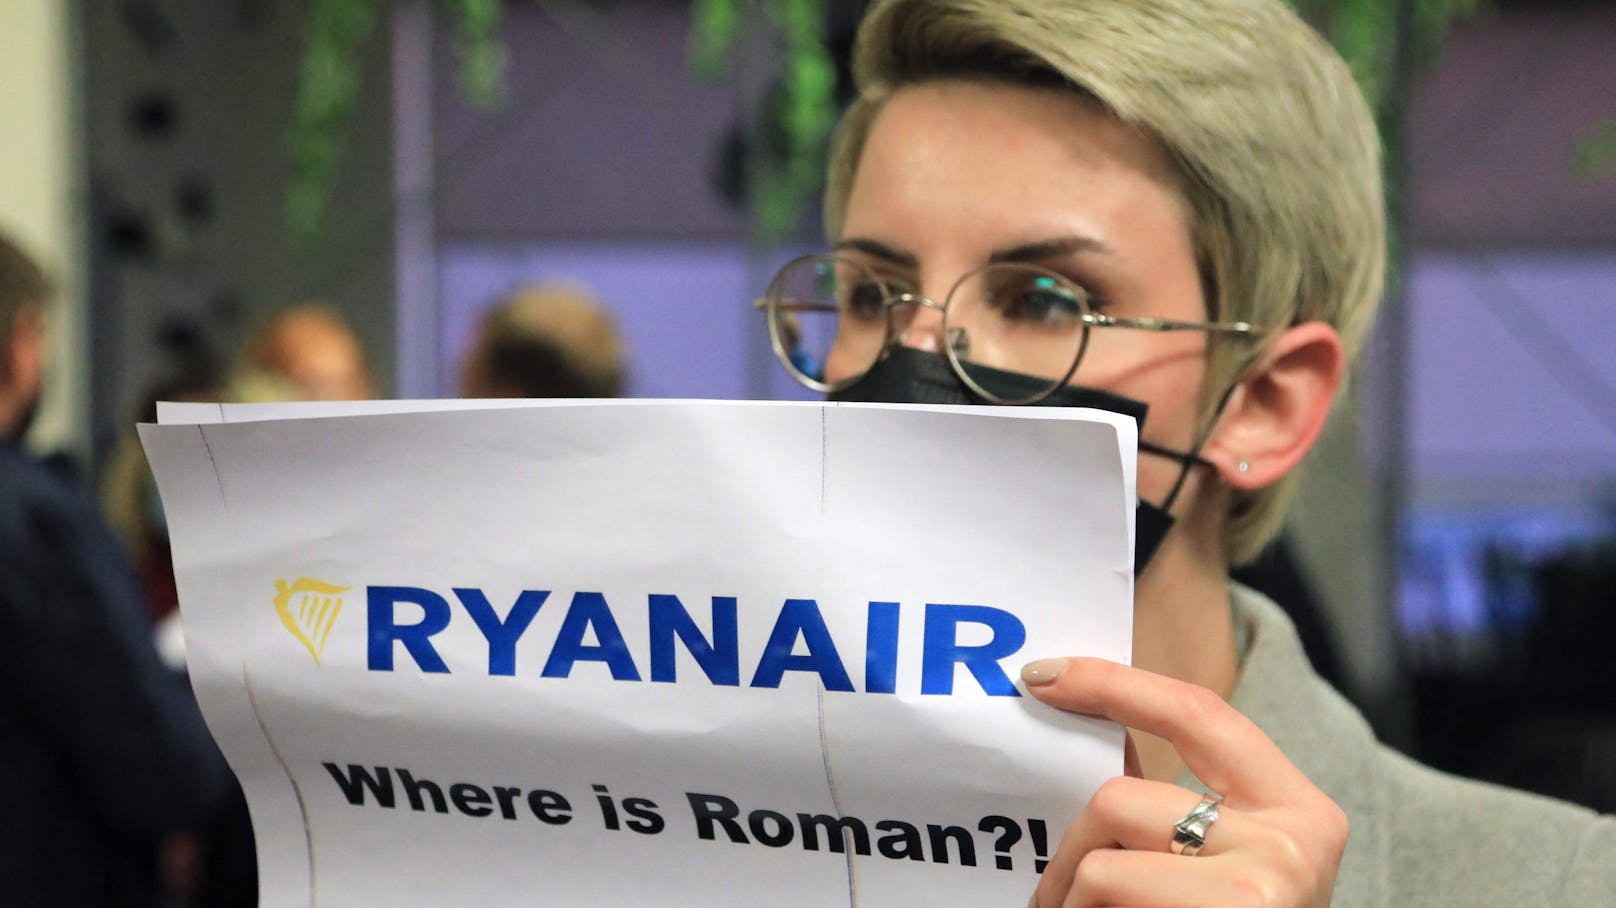 "Ryanair, wo ist Roman?!" Damit begrüßten Unterstützer des belarussischen Exil-Oppositionellen Roman Protasewitsch die Ryanair-Maschine in Vilnius.